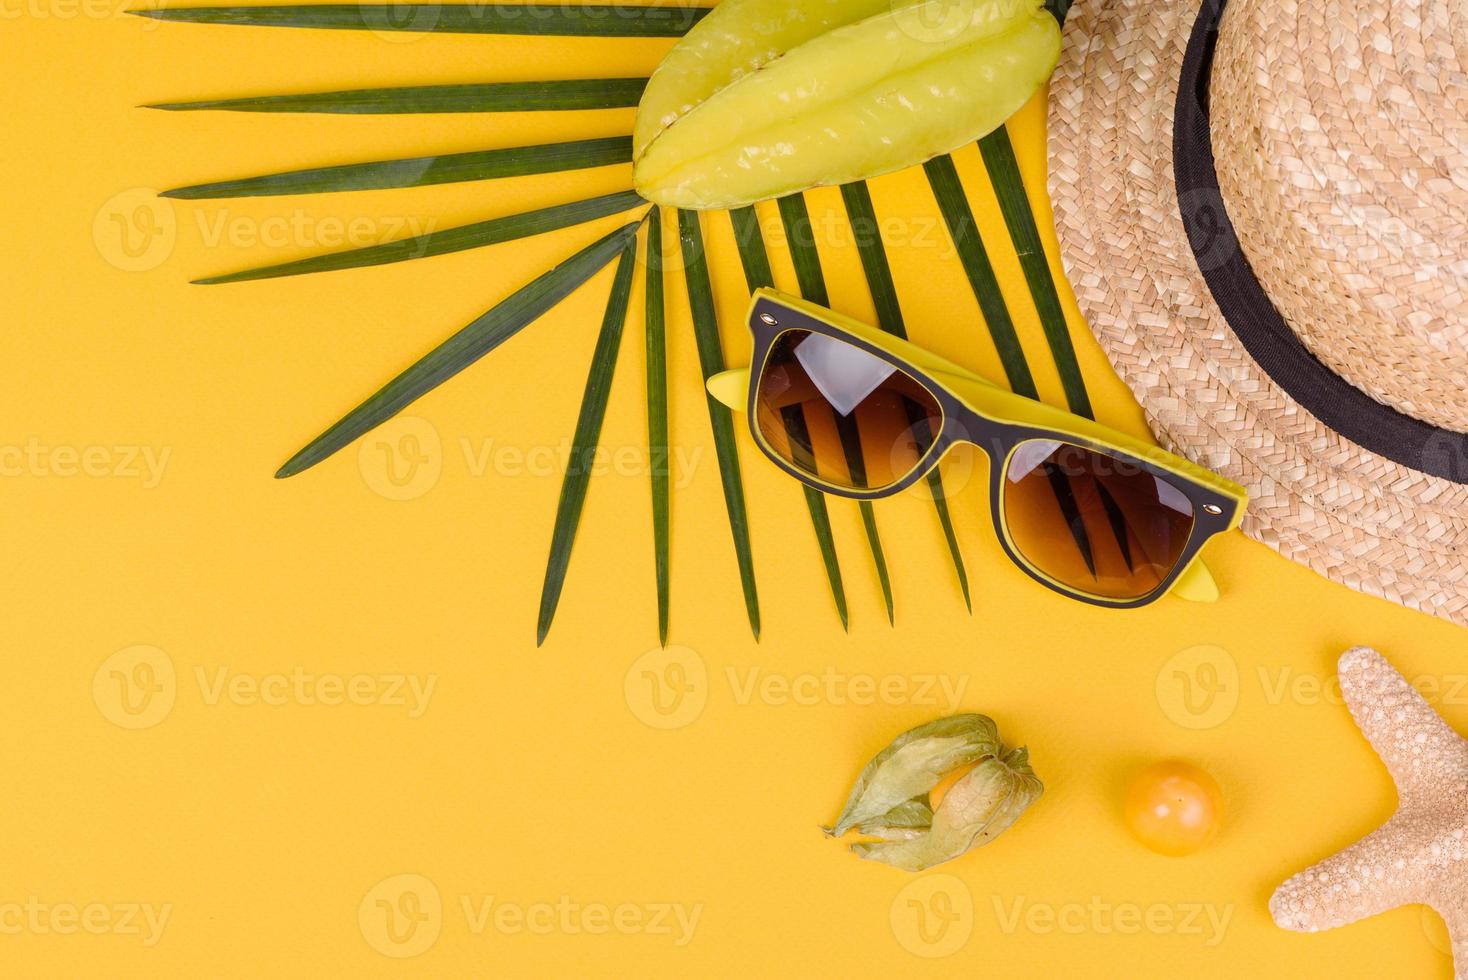 fruktkarambol, strandtillbehör och bladverk av en tropisk växt på färgat papper foto